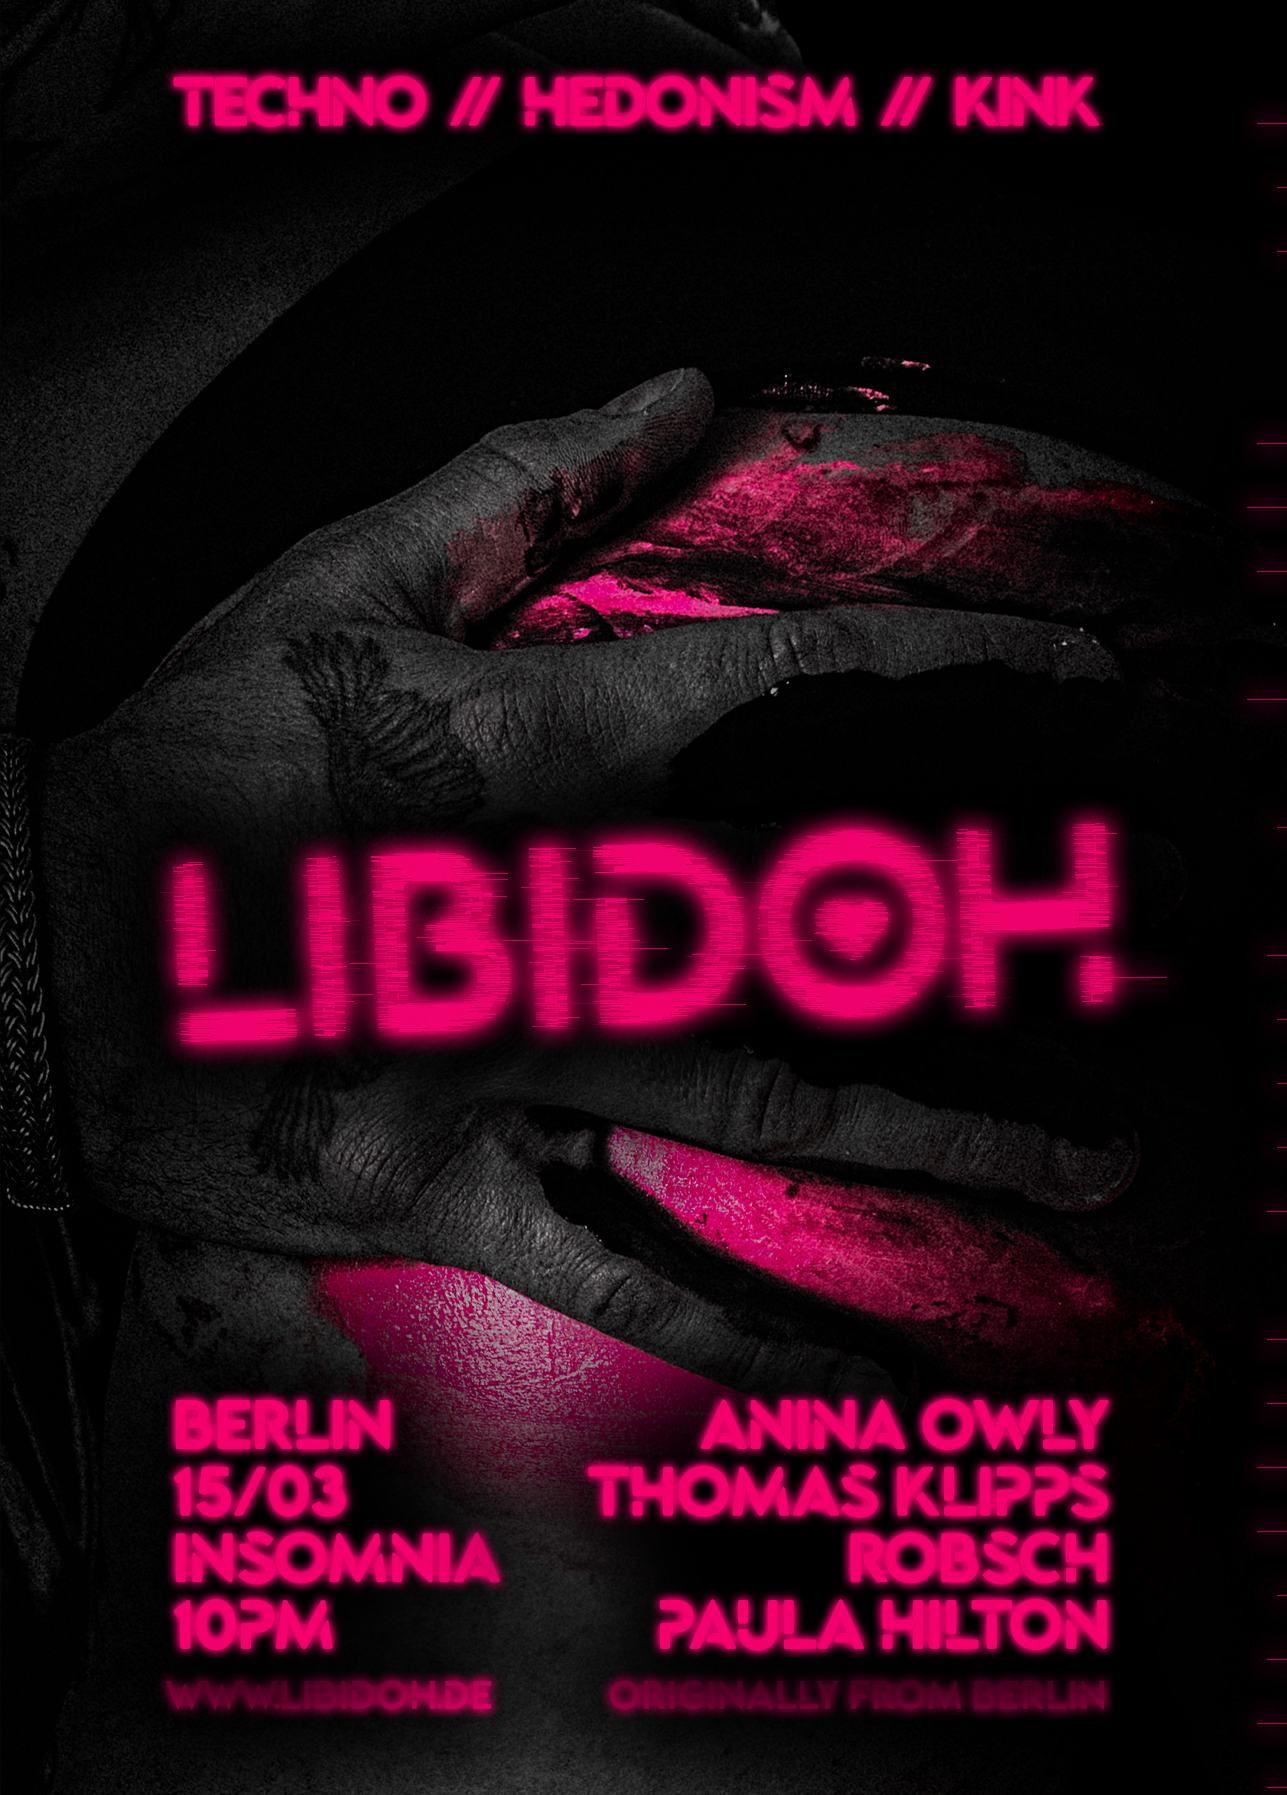 LIBIDOH with Anina Owly & Thomas Klipps - フライヤー表